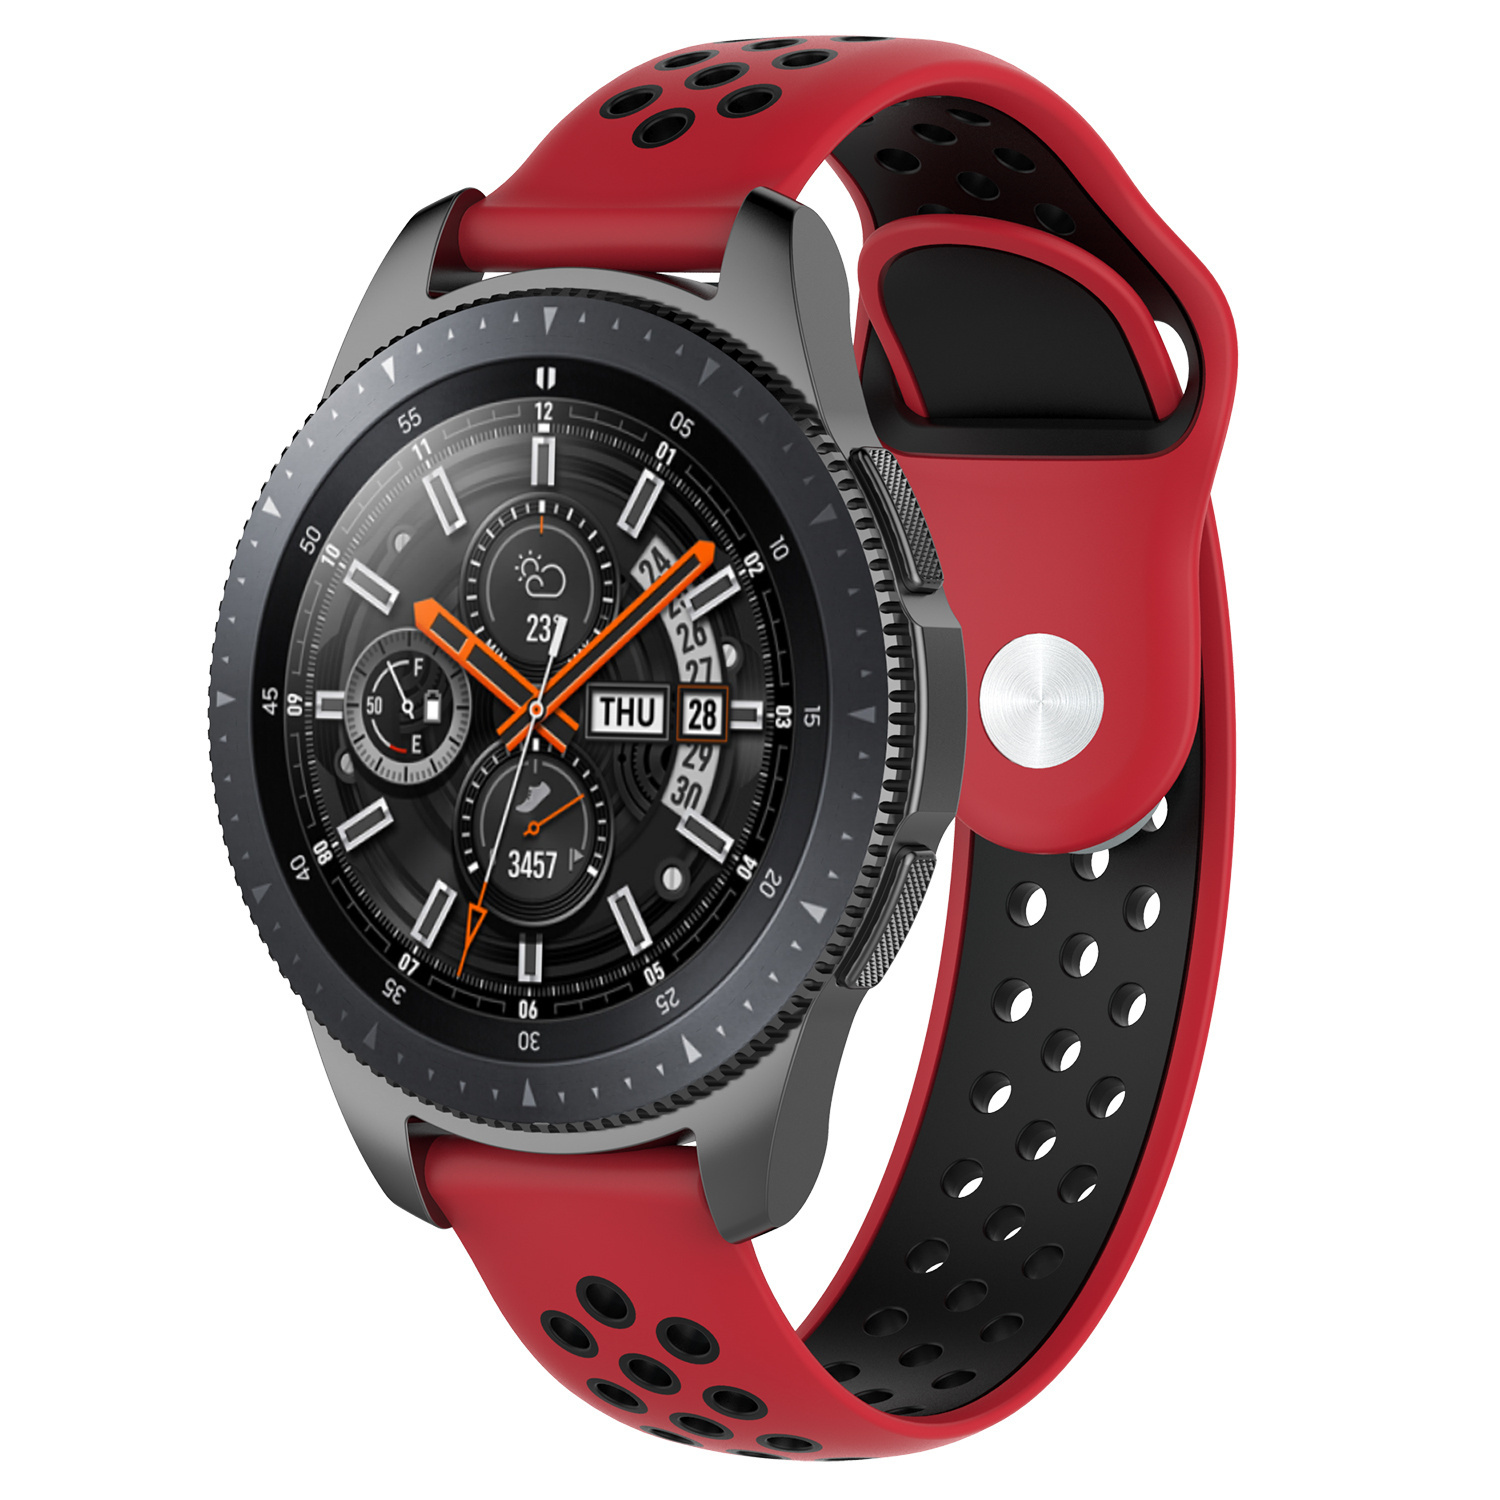 Correa deportiva doble para el Huawei Watch GT - rojo negro